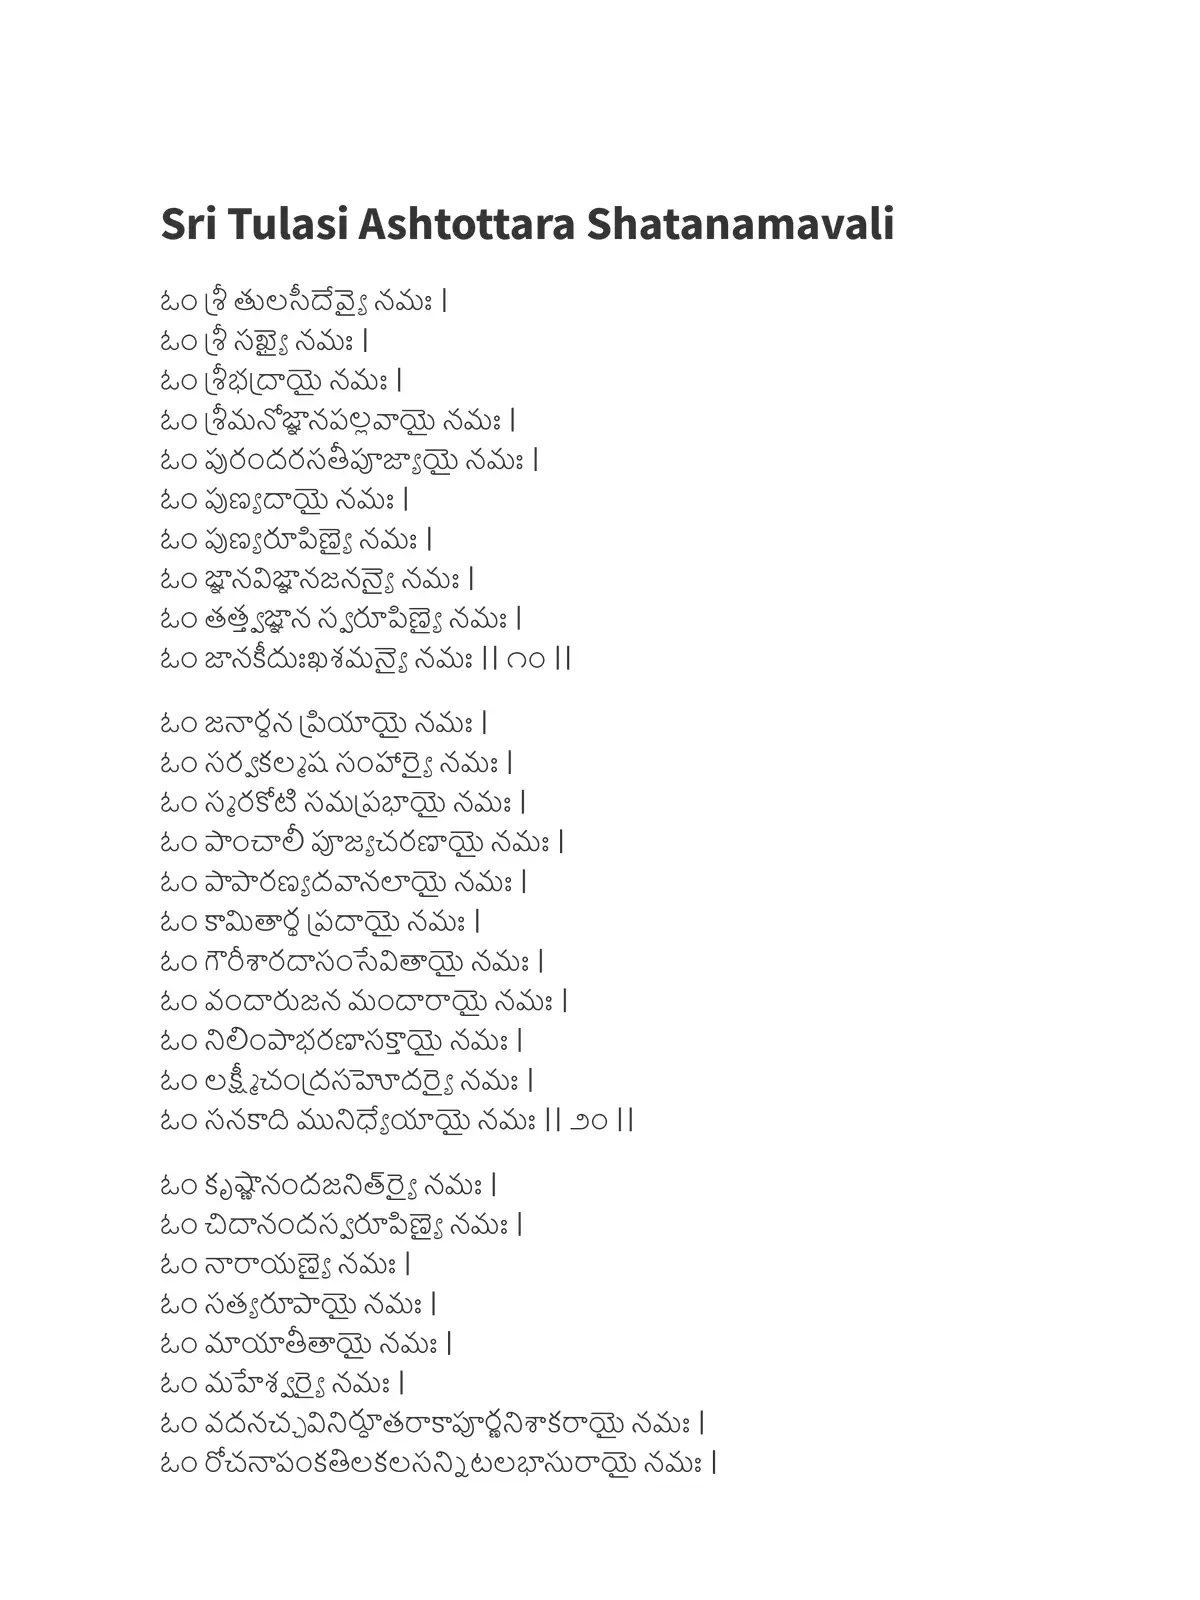 శ్రీ తులసీ అష్టోత్తరశతనామావళిః (Sri Tulasi Ashtottara Shatanamavali)